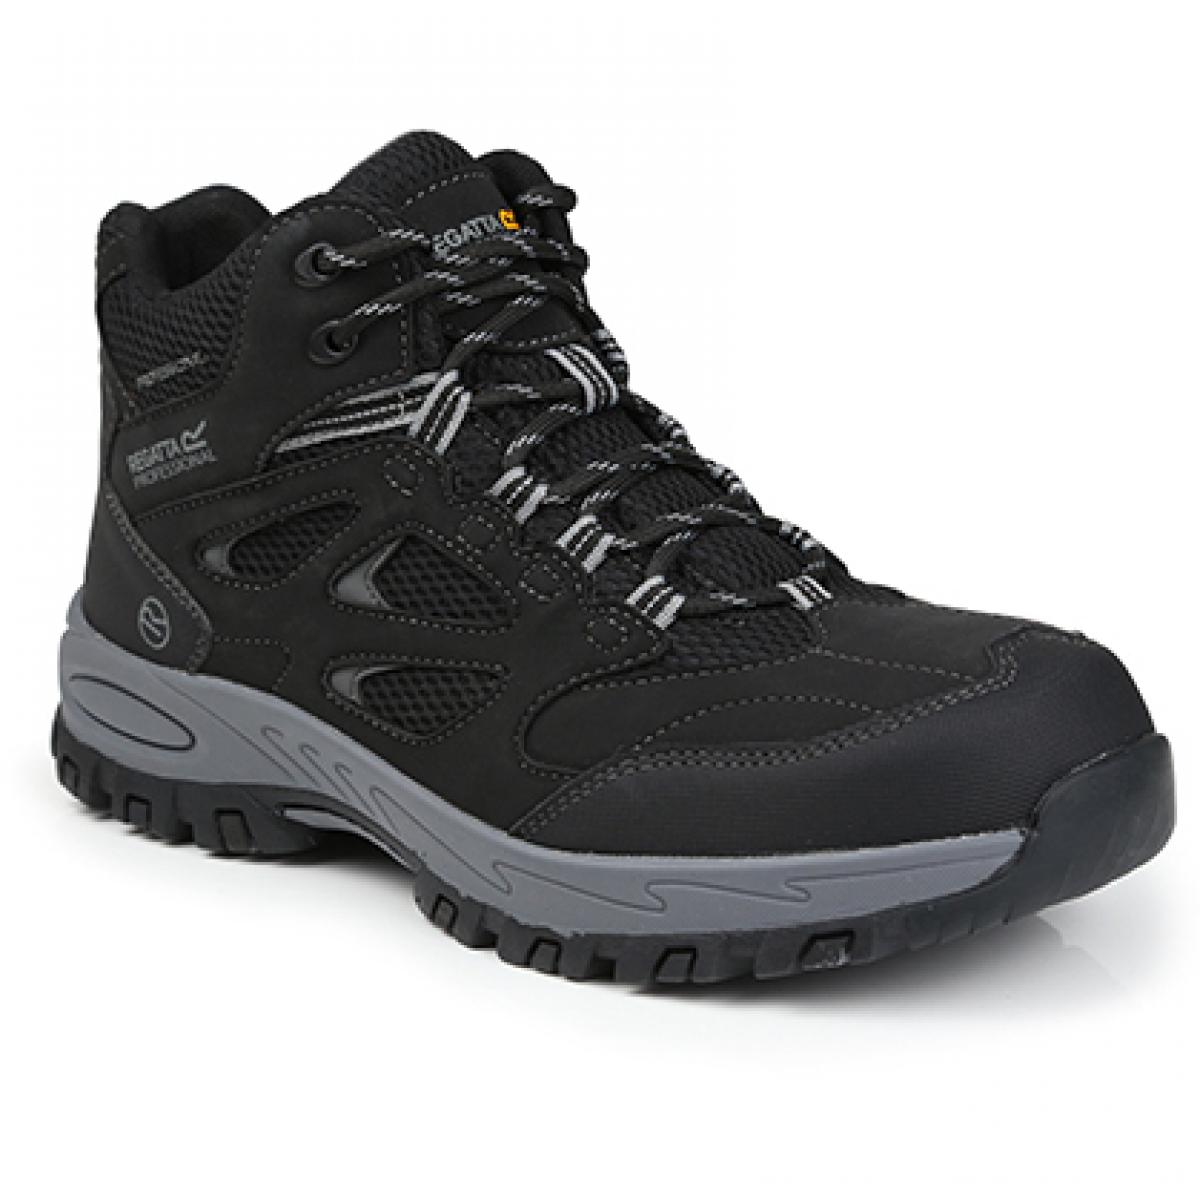 Hersteller: Regatta Safety Footwear Herstellernummer: TRK201 Artikelbezeichnung: Mudstone SBP Safety Hiker - Arbeitsschuhe Farbe: Black/Granite